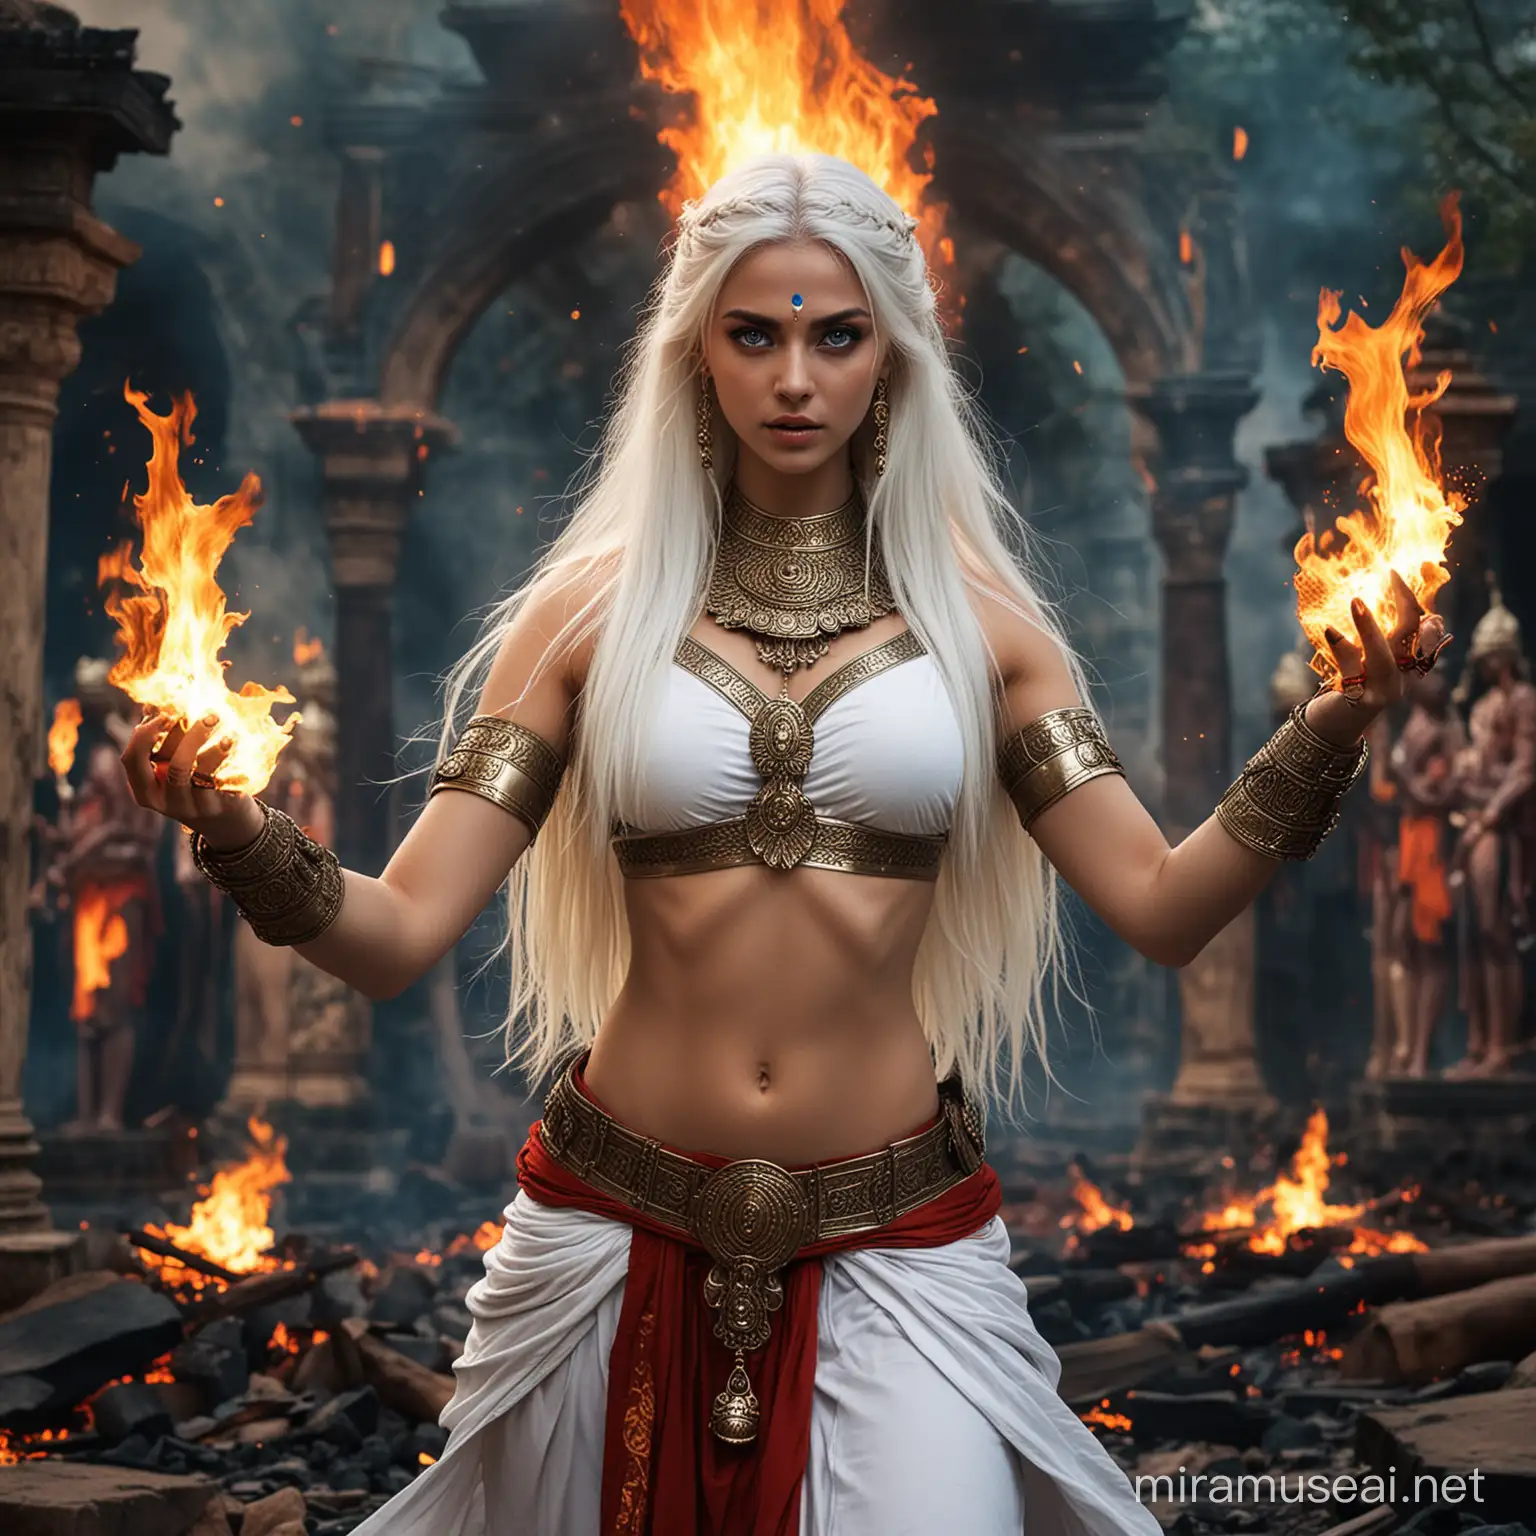 Powerful Hindu Empress Goddess Battling Demons in Fiery Command